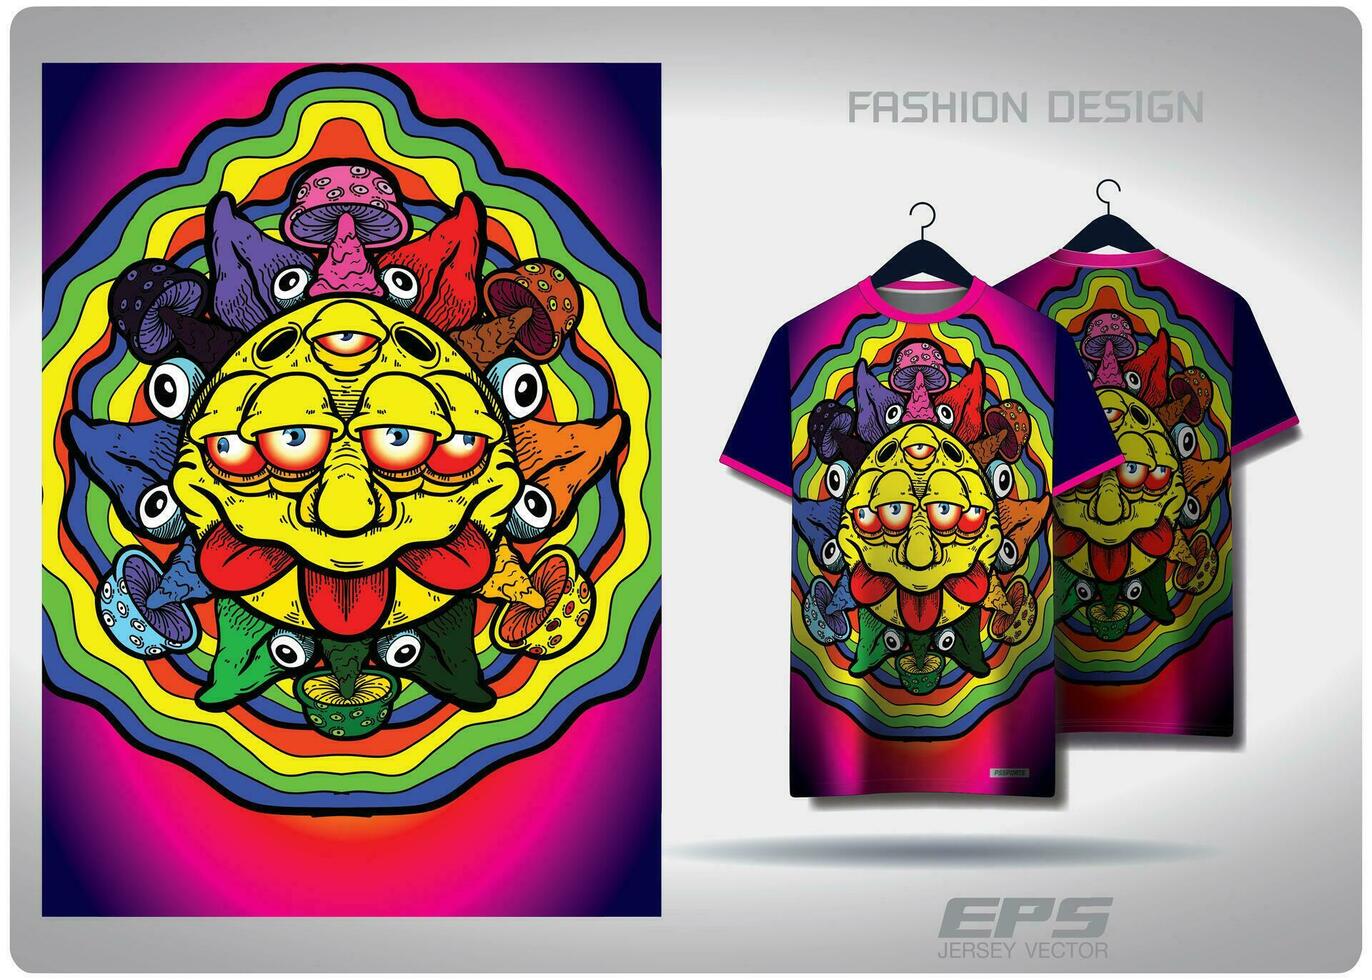 vektor t-shirt bakgrund image.rainbow Sol mönster design, illustration, textil- bakgrund för t-shirt, jersey gata t-shirt